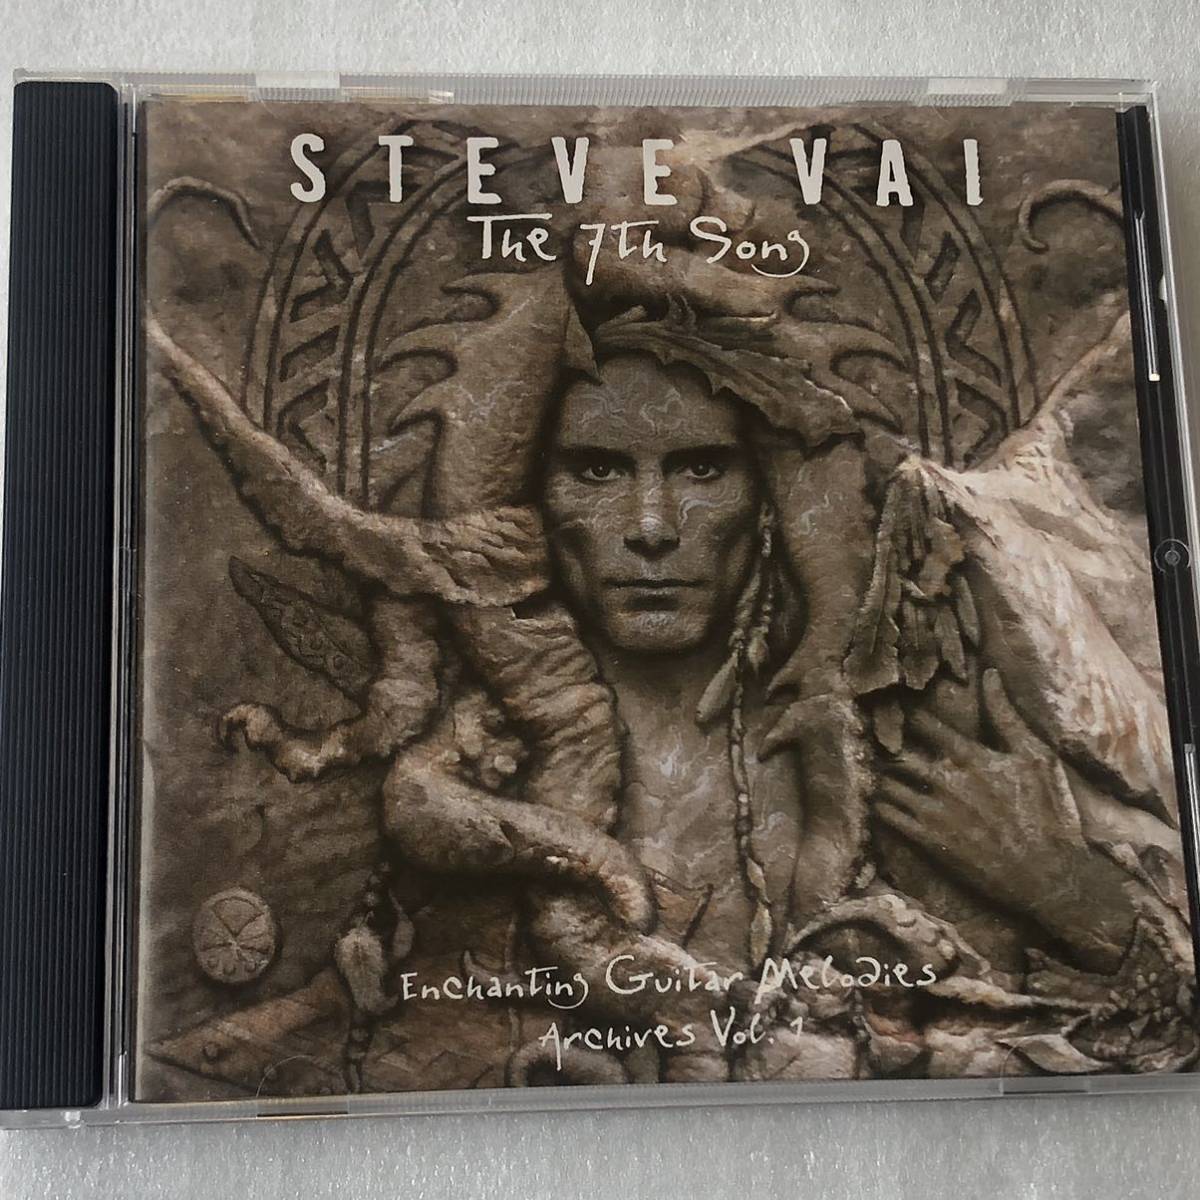 中古CD Steve Vai/The 7th Song (2000年)_画像1